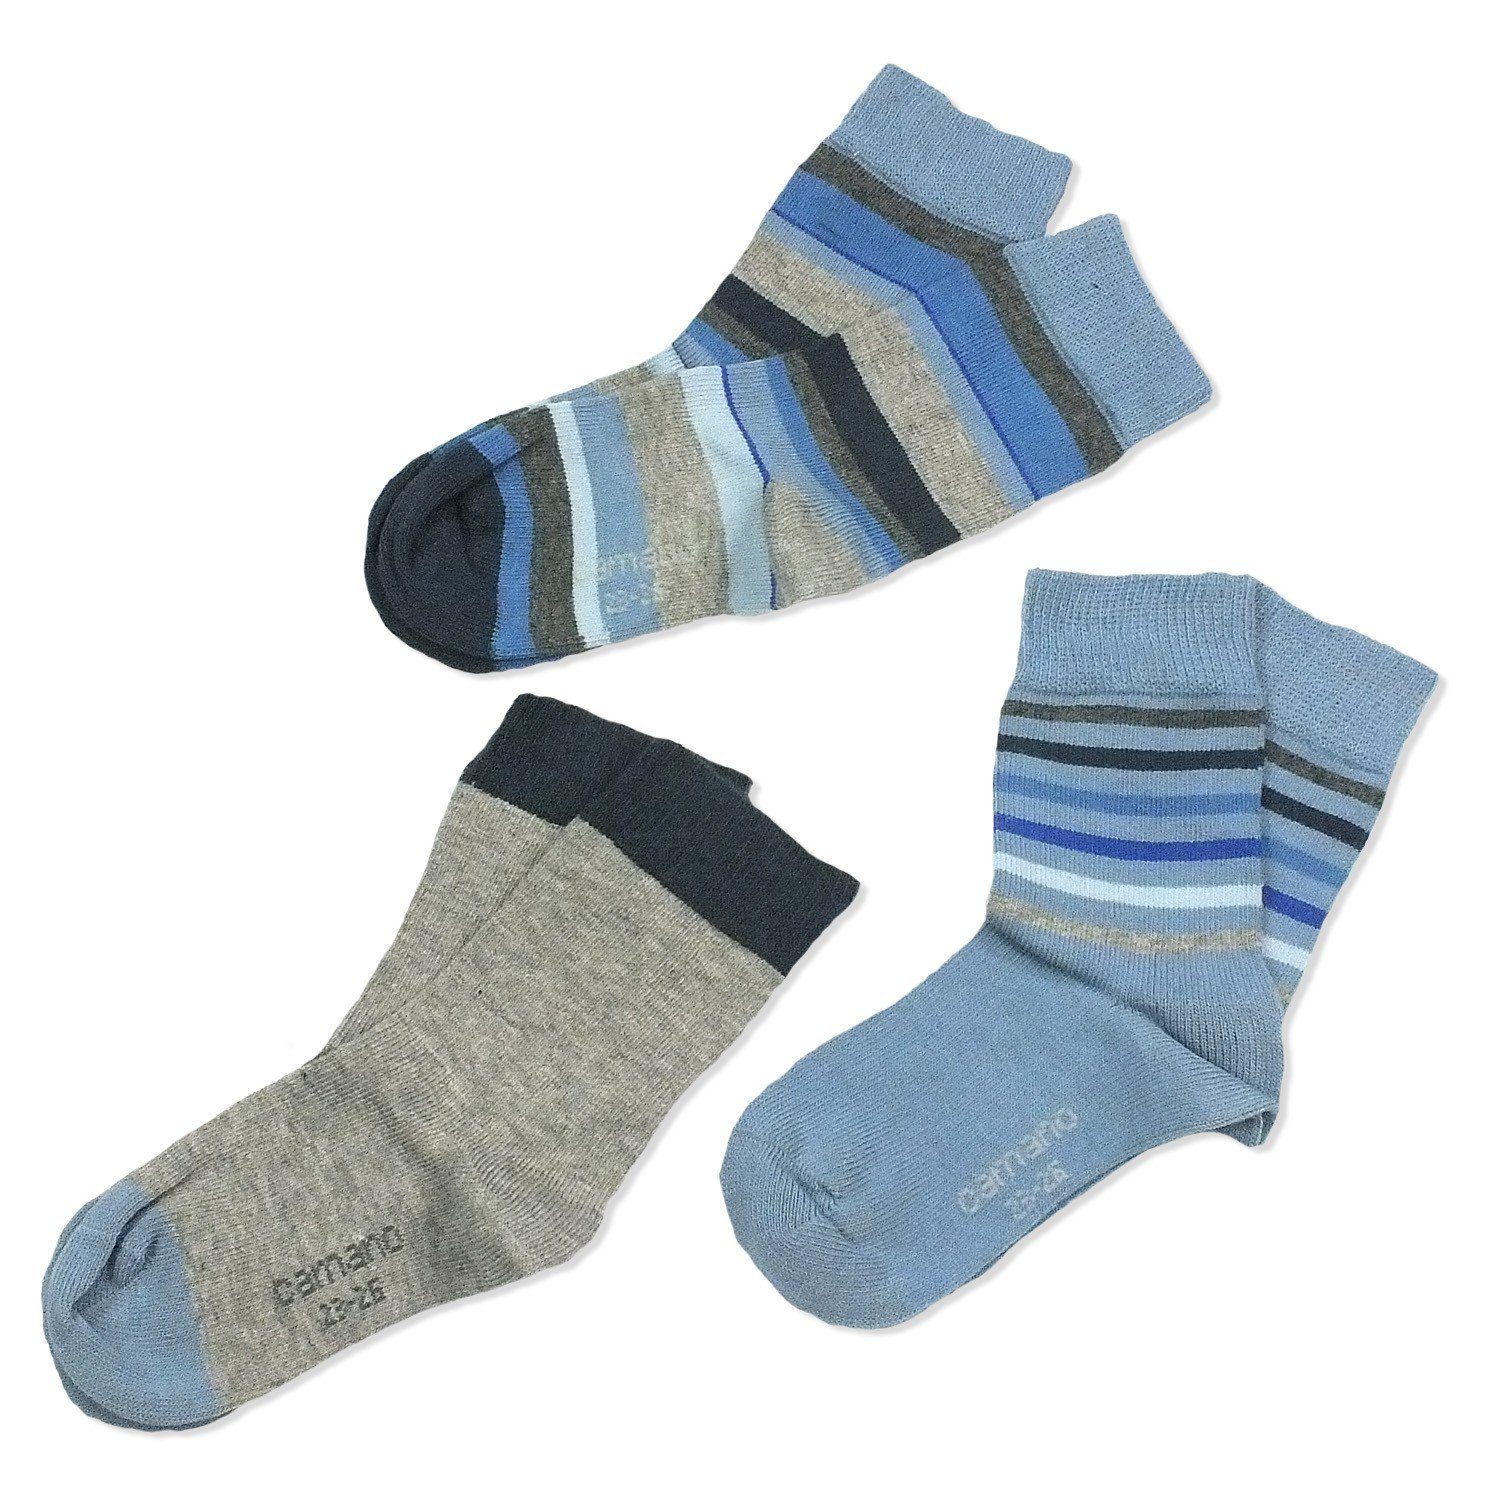 Camano Langsocken CA3822 (Packung, 3-Paar, 3 Paar) Kinder Socken, Jungen & Mädchen mit Baumwolle, Kindersocken